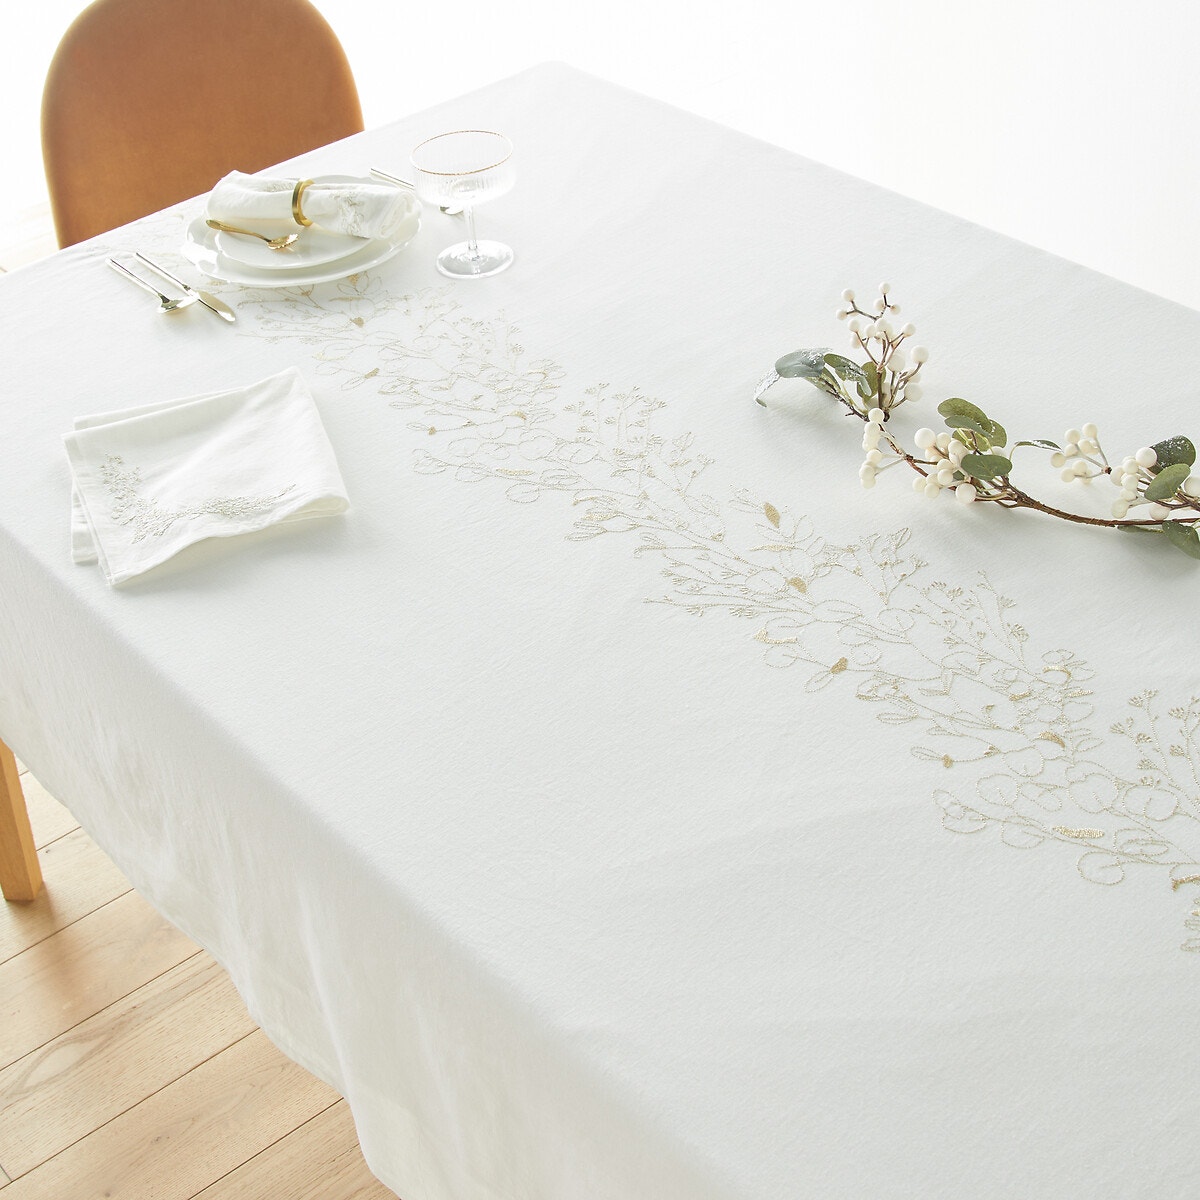 Σπίτι > Λευκά είδη > Κουζίνα > Τραπεζομάντηλα Τραπεζομάντηλο με κέντημα από βαμβάκι λινό 150x150 cm